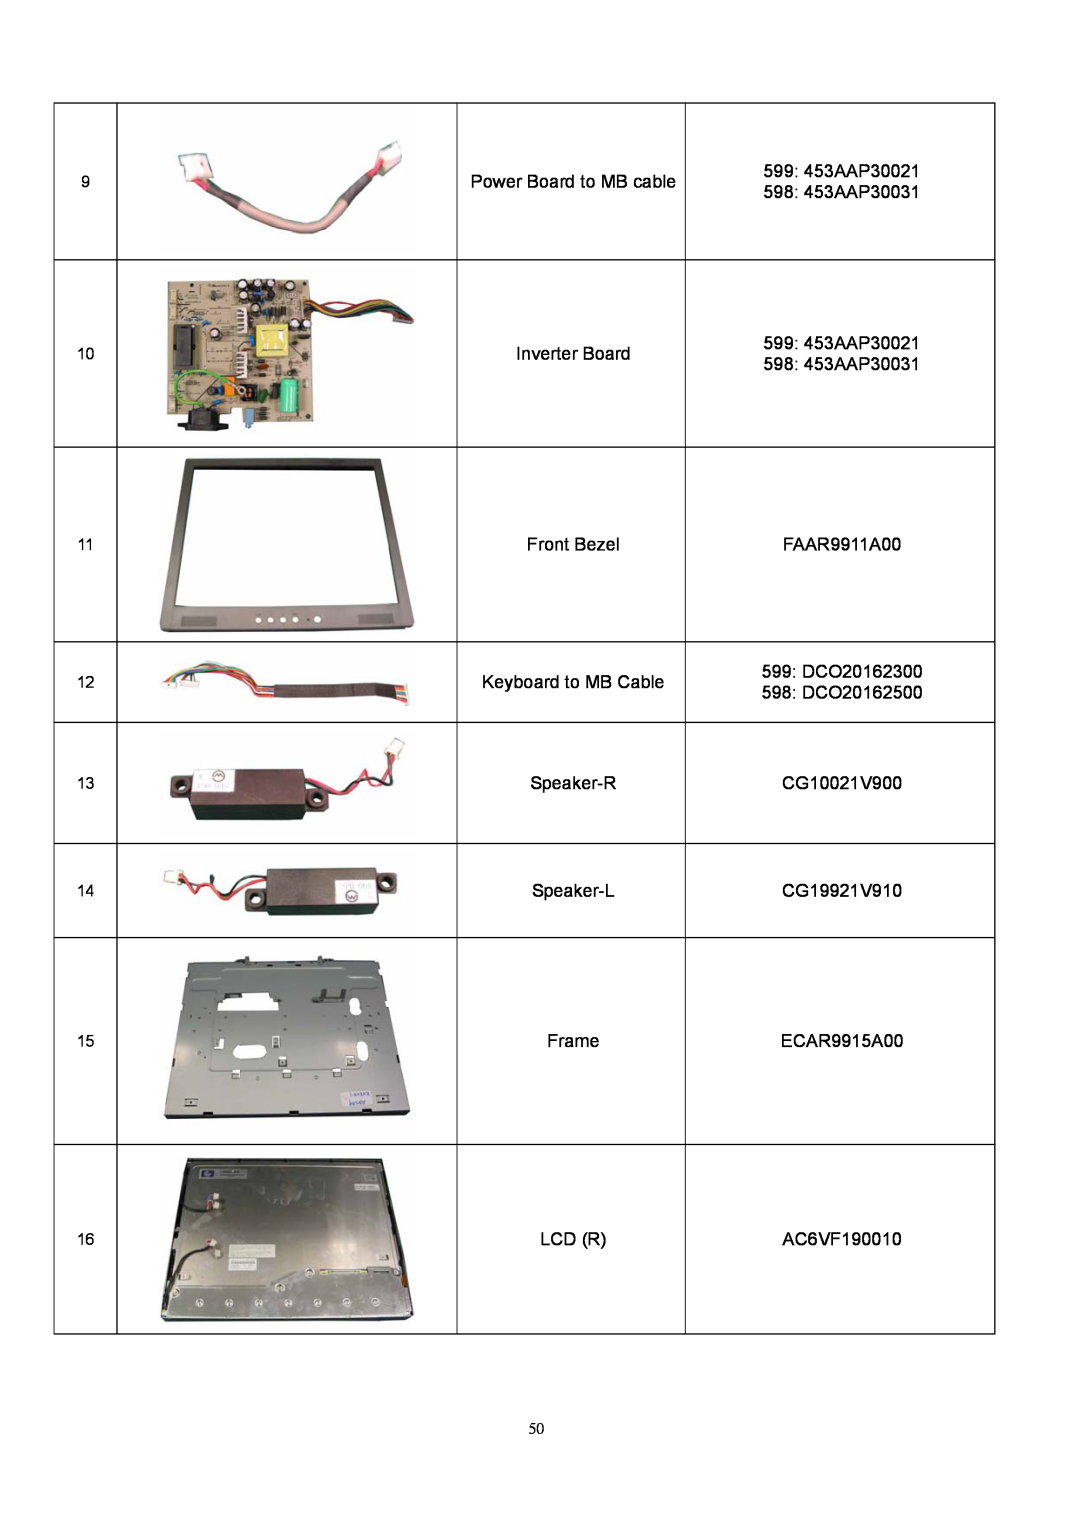 Acer AL1912 Power Board to MB cable, 599 453AAP30021, 598 453AAP30031, Inverter Board, Front Bezel, FAAR9911A00, Speaker-R 